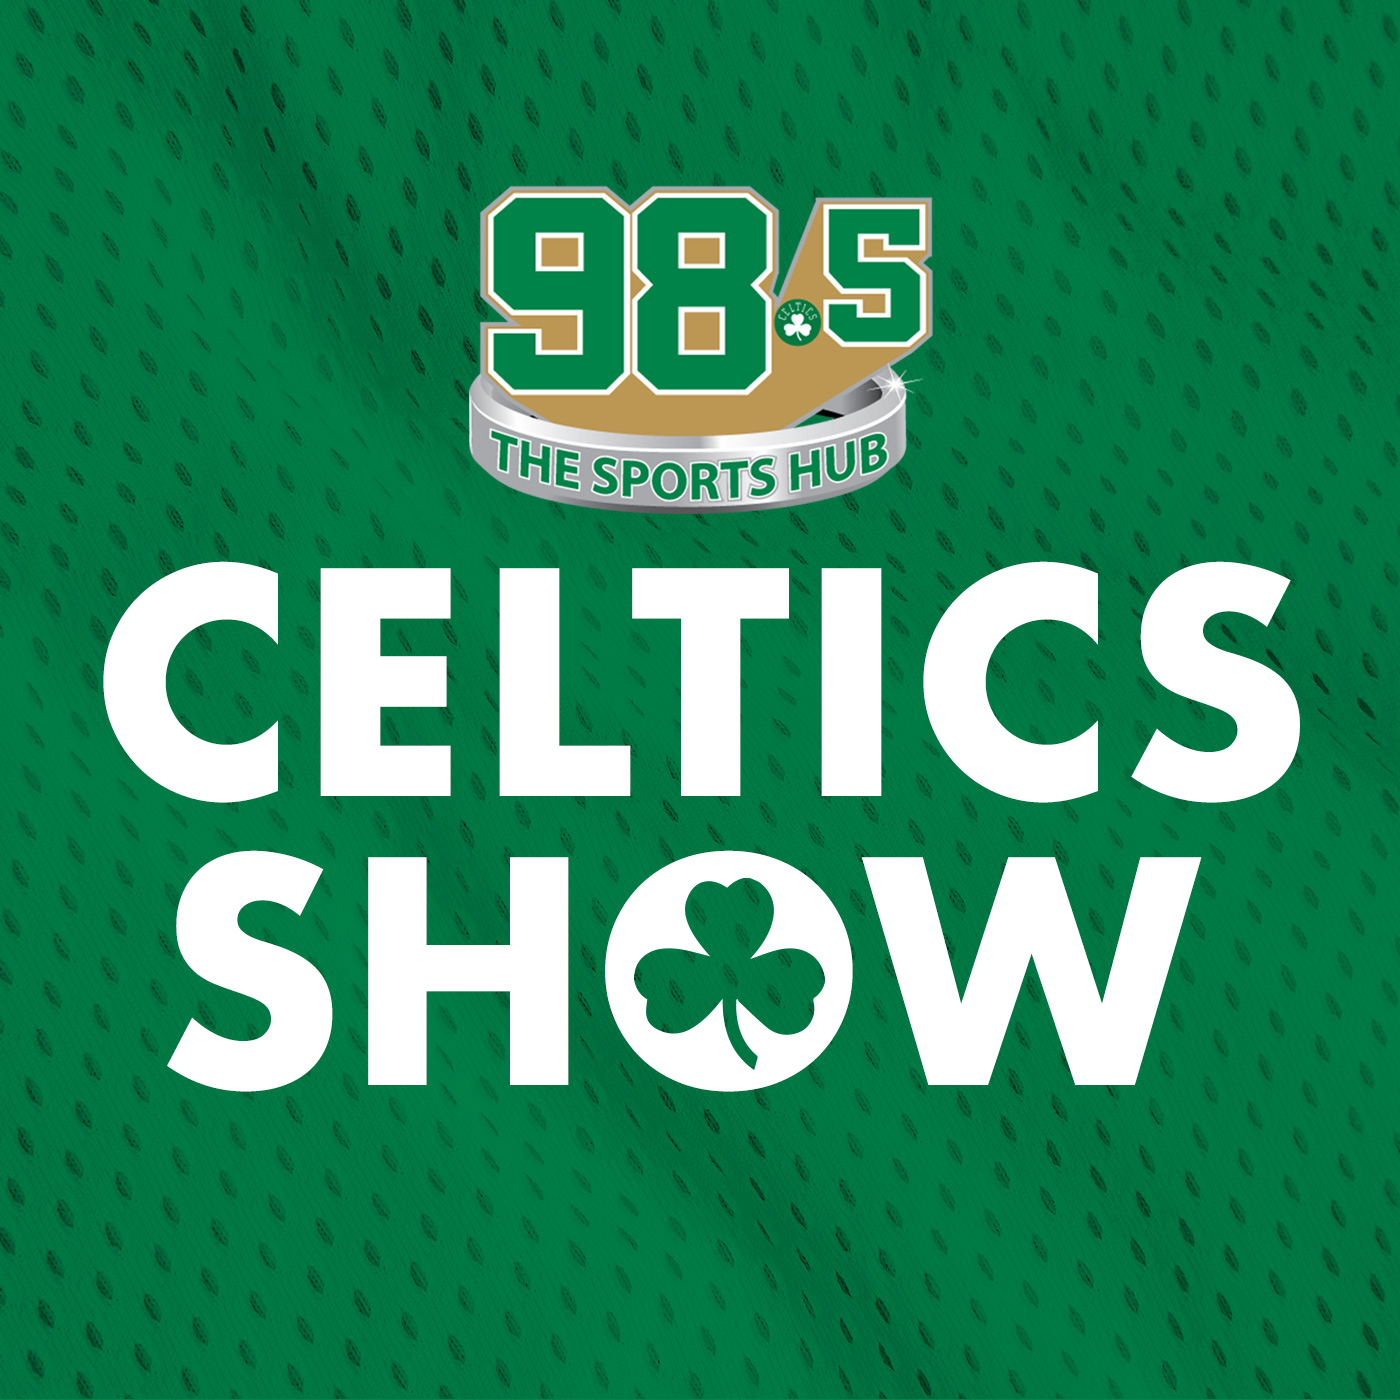 Celtics-Heat analysis // Joe Mazzulla's tactics // Injuries hit around East